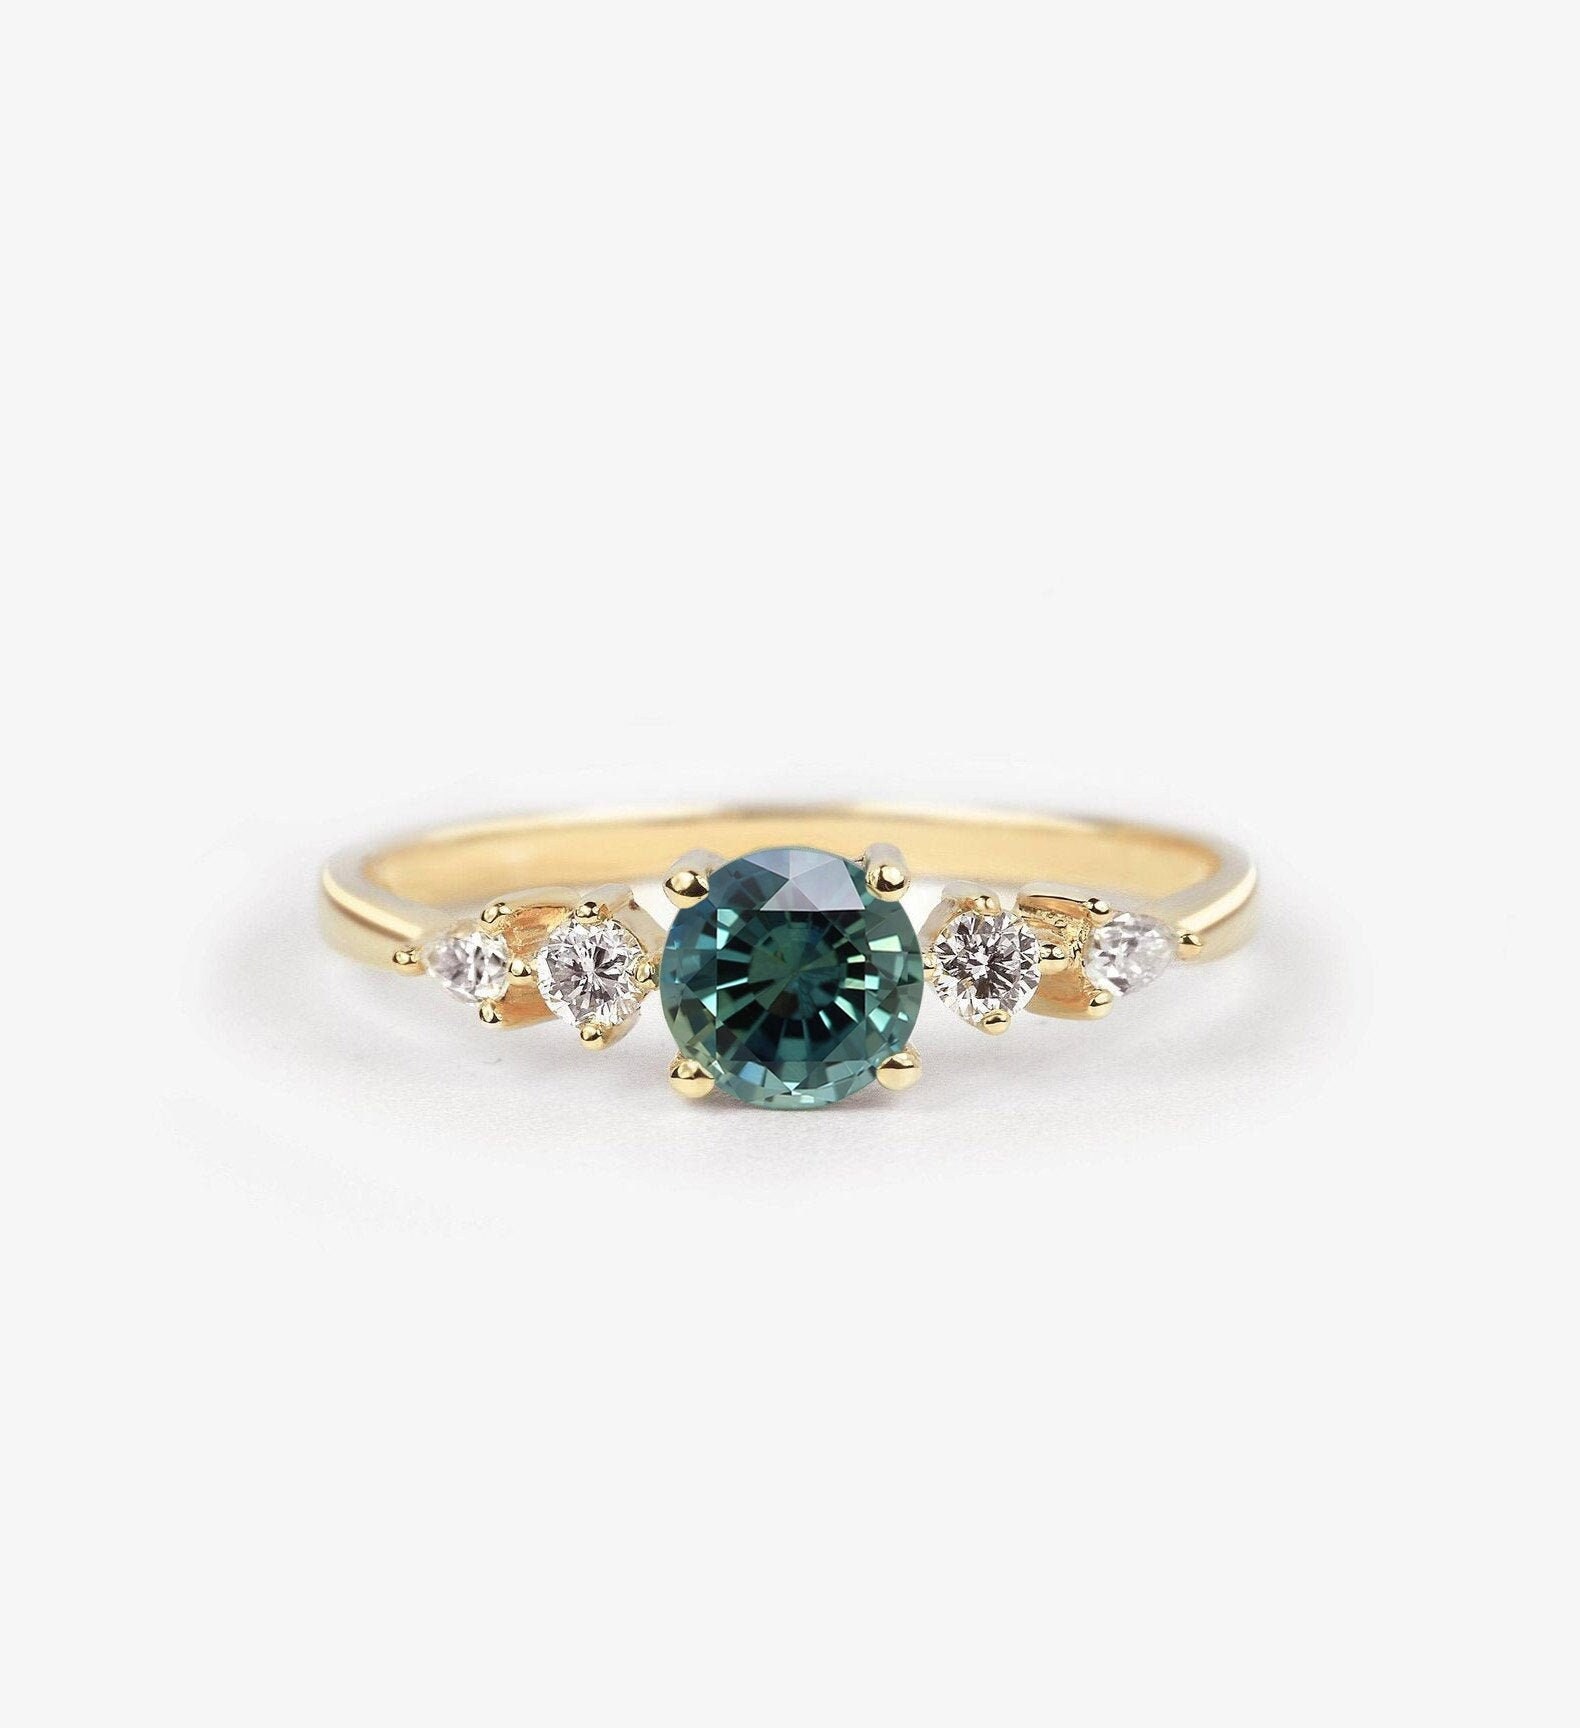 Teal Sapphire Engagement Ring | Three Stone Handmade Anniversary 9K/14K/18K Rose, White, Yellow Gold & Platinum